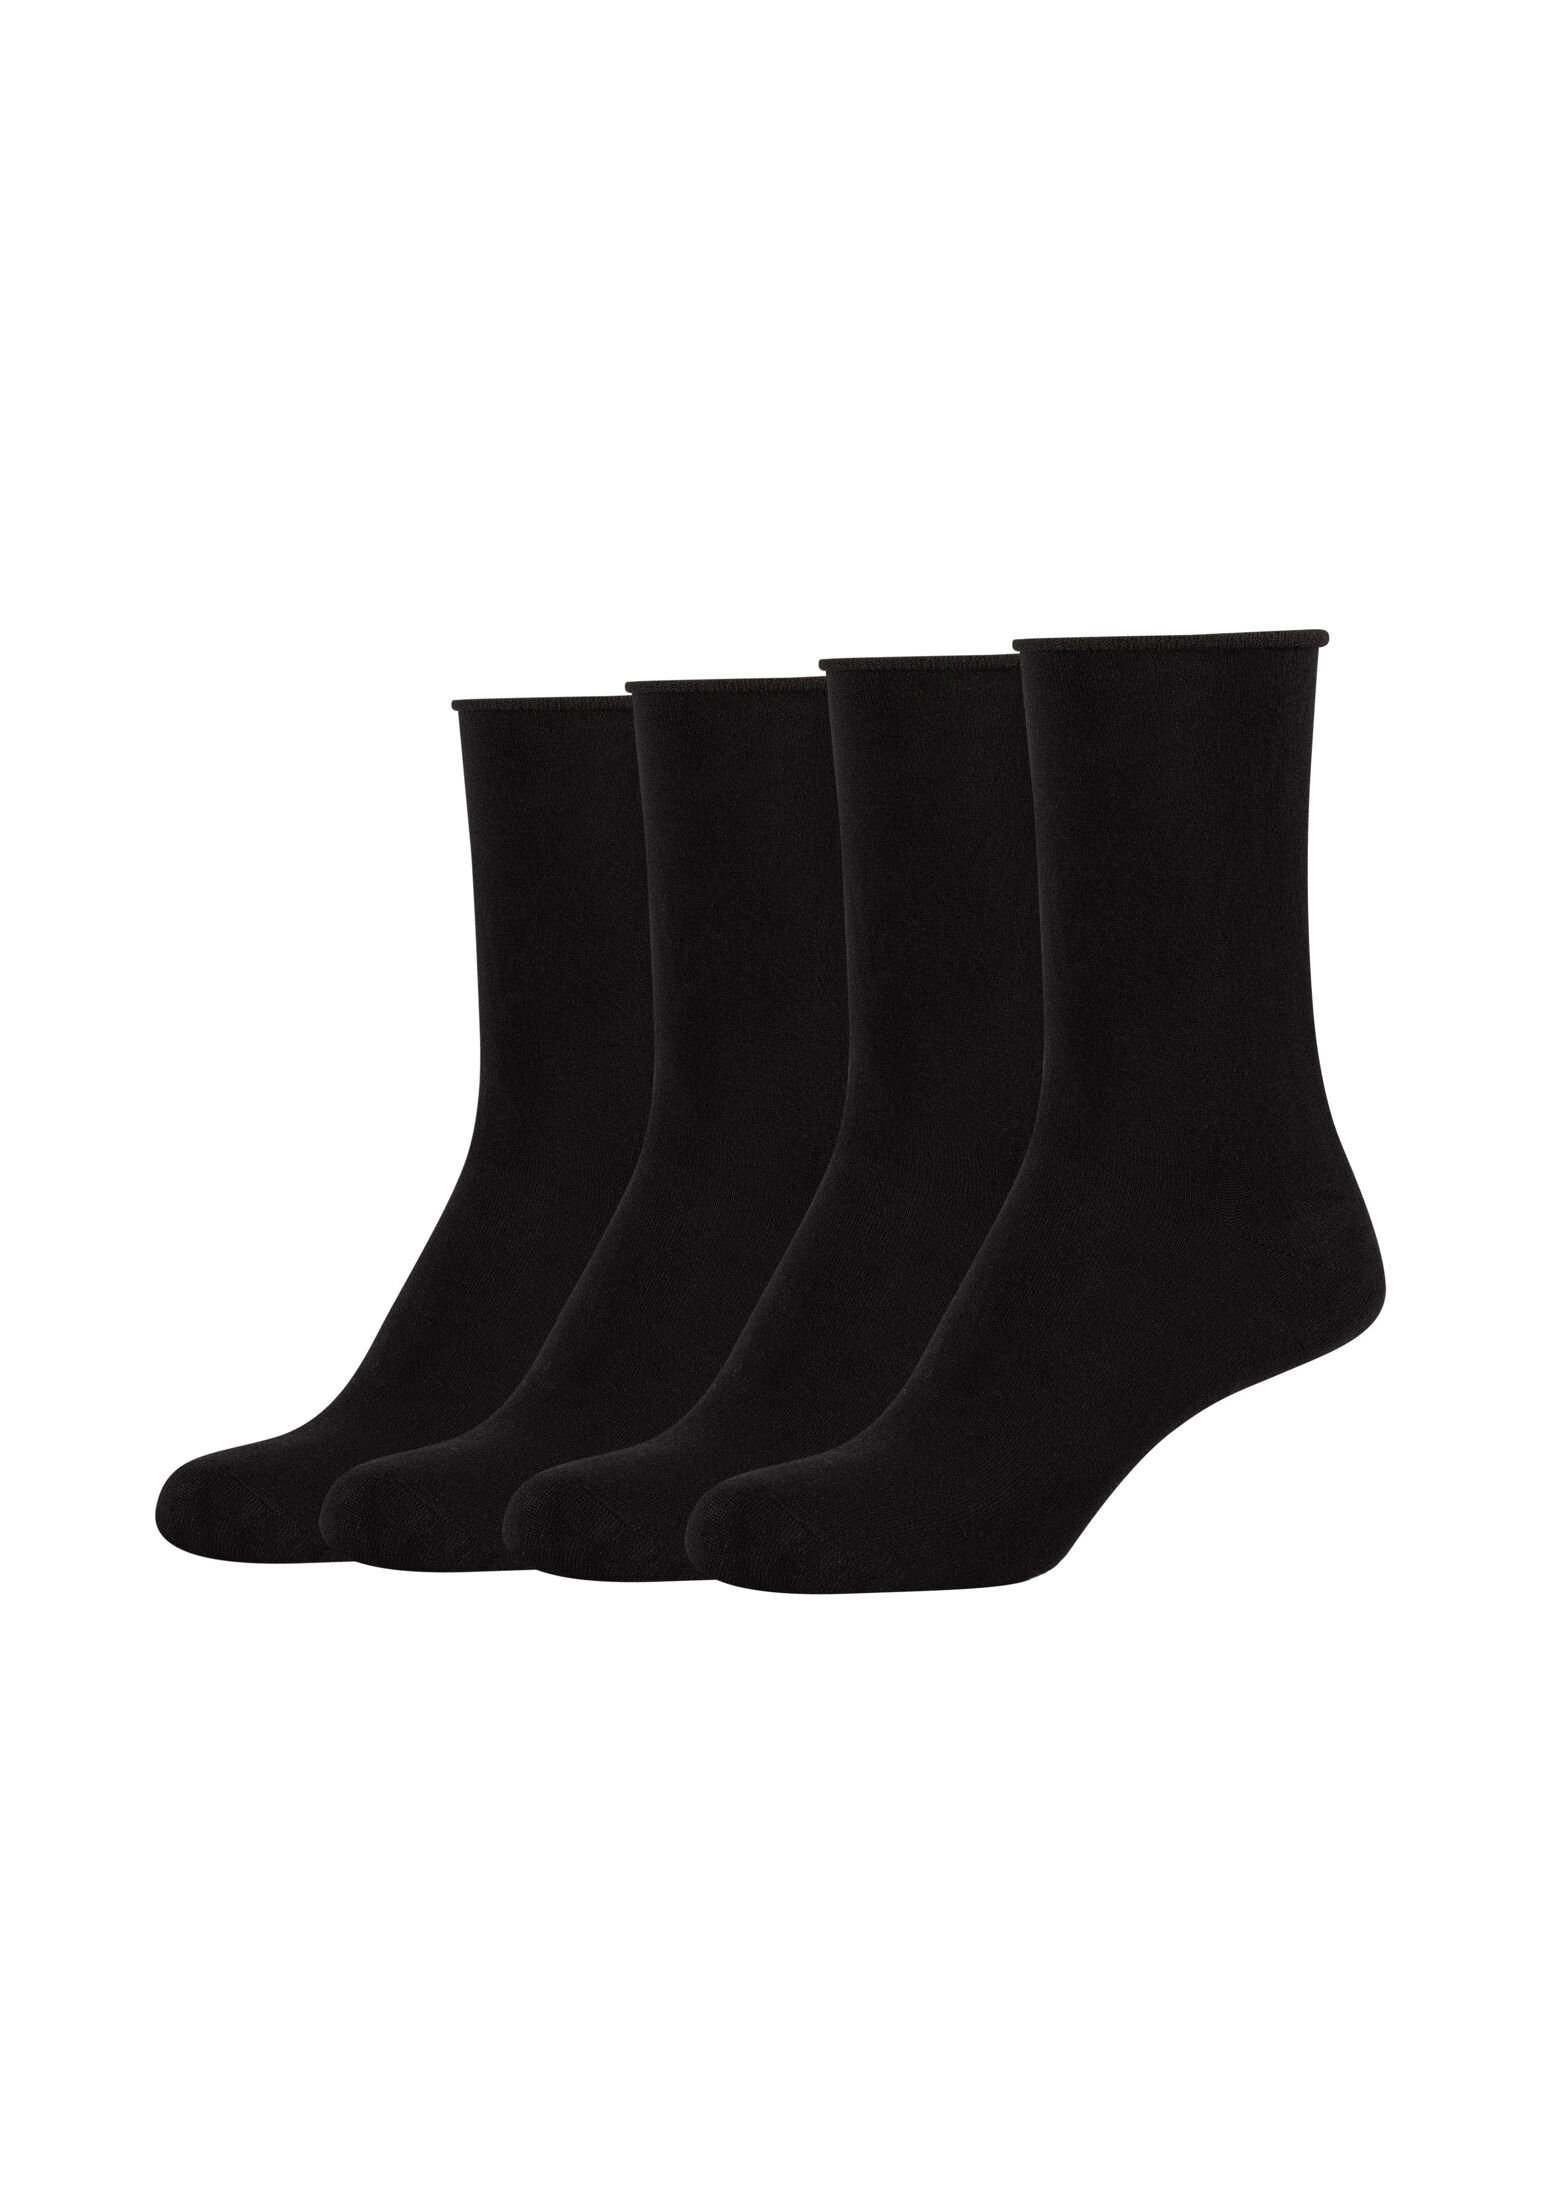 Socken black 4er Pack Socken s.Oliver